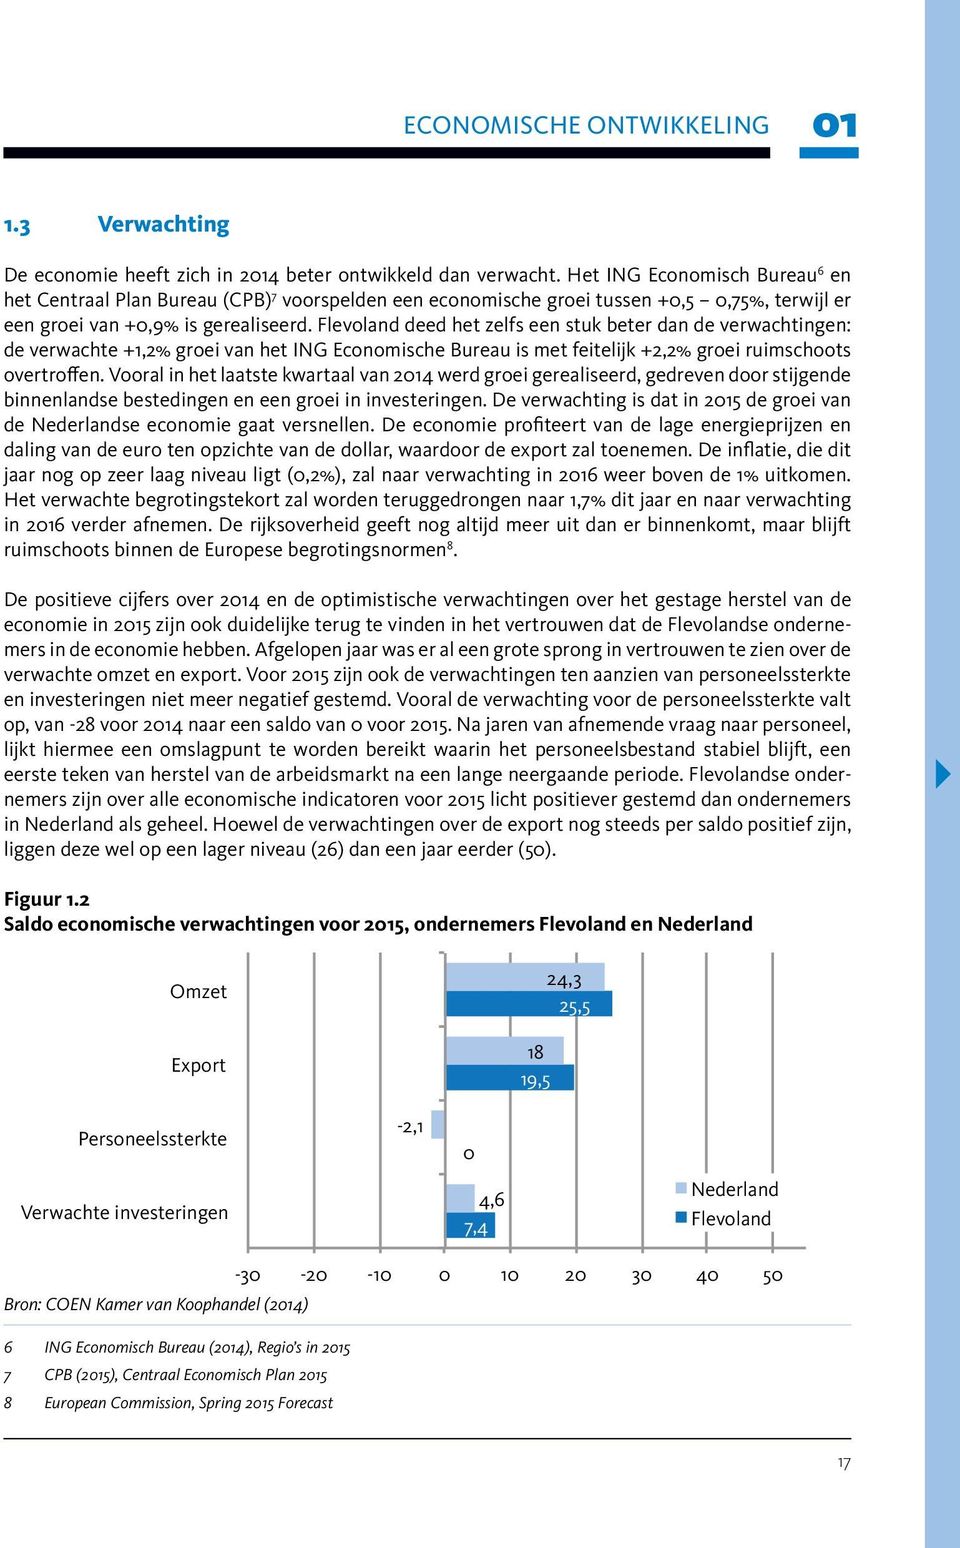 Flevoland deed het zelfs een stuk beter dan de verwachtingen: de verwachte +1,2% groei van het ING Economische Bureau is met feitelijk +2,2% groei ruimschoots overtroffen.